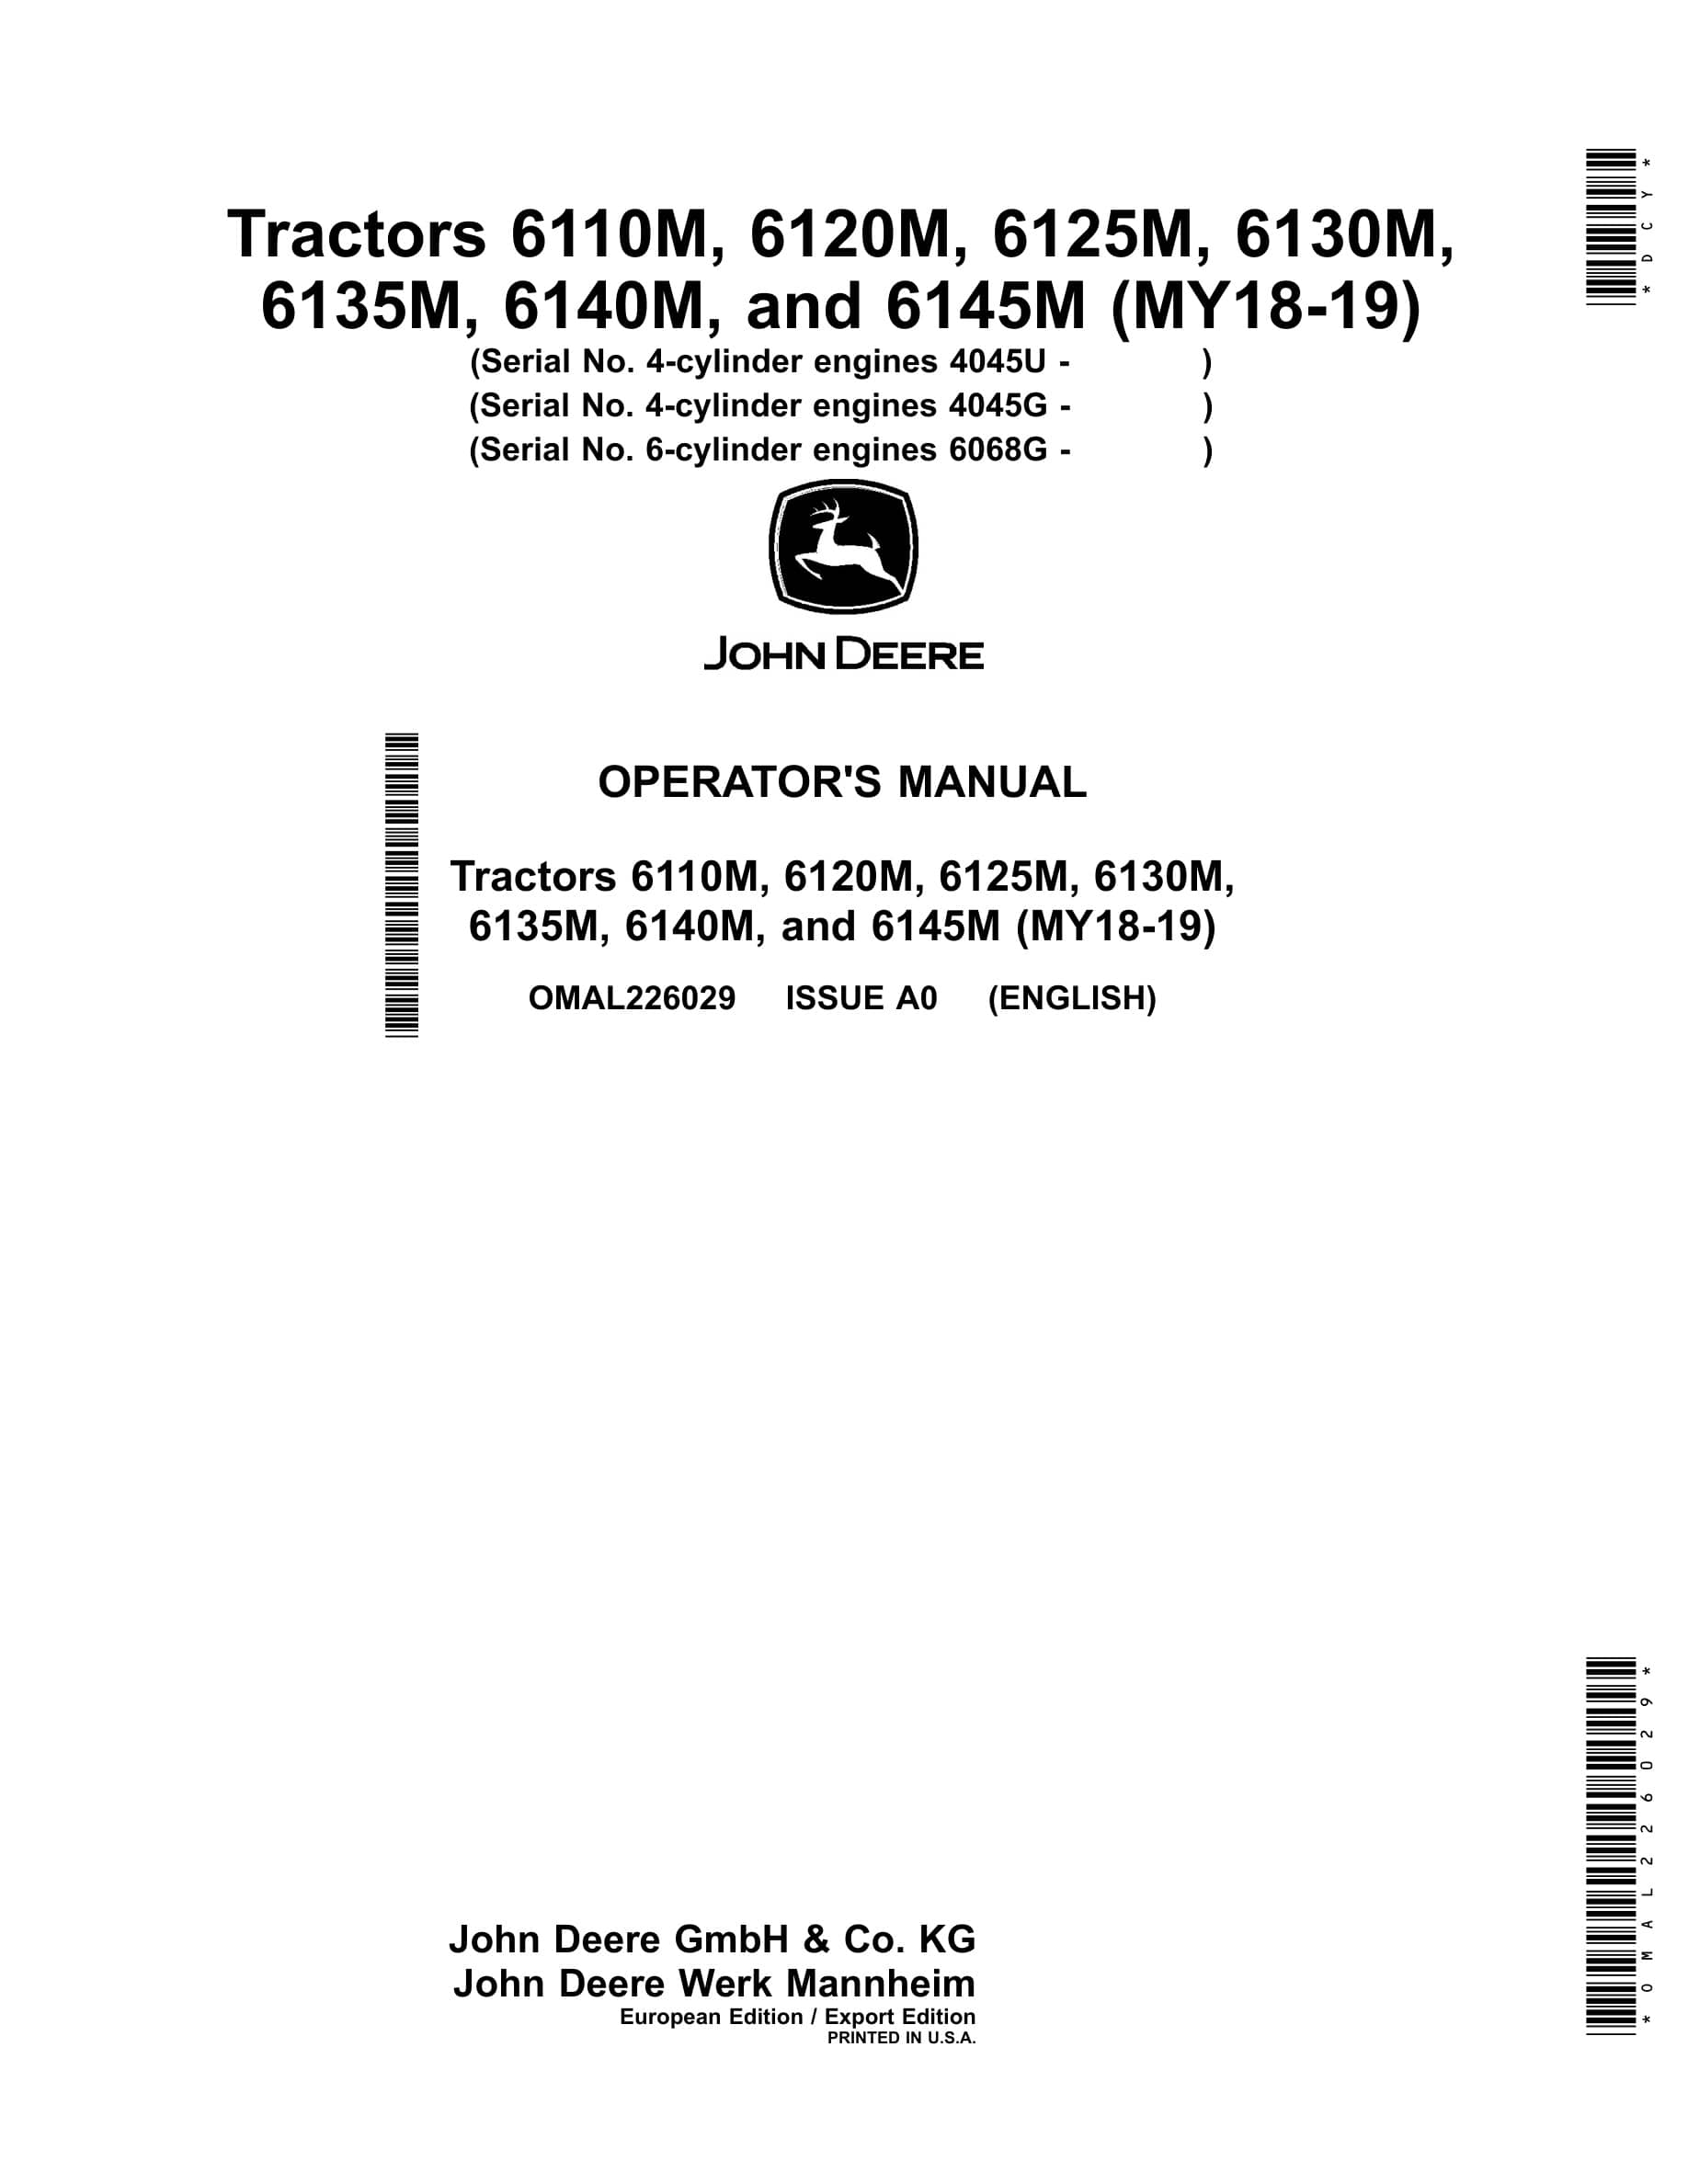 John Deere 6110m, 6120m, 6125m, 6130m, 6135m, 6140m, And 6145m Tractors Operator Manuals OMAL226029-1